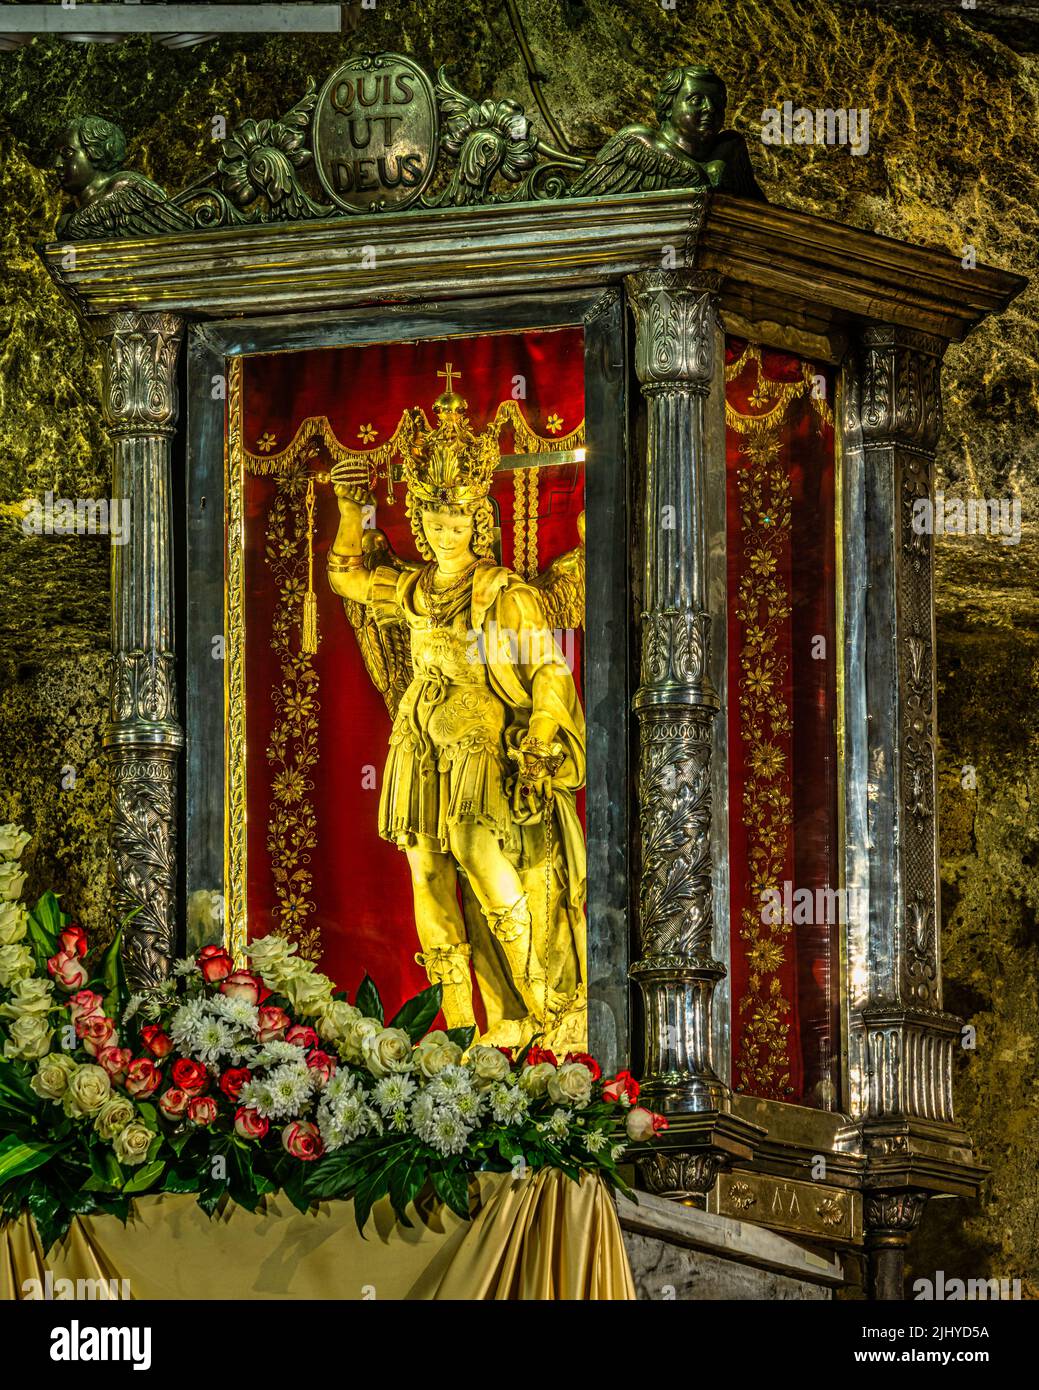 La statua di San Michele Arcangelo, un'immagine archetipica di devozione scolpita in marmo bianco di Carrara. Monte Sant'Angelo provincia di Foggia, Puglia Foto Stock